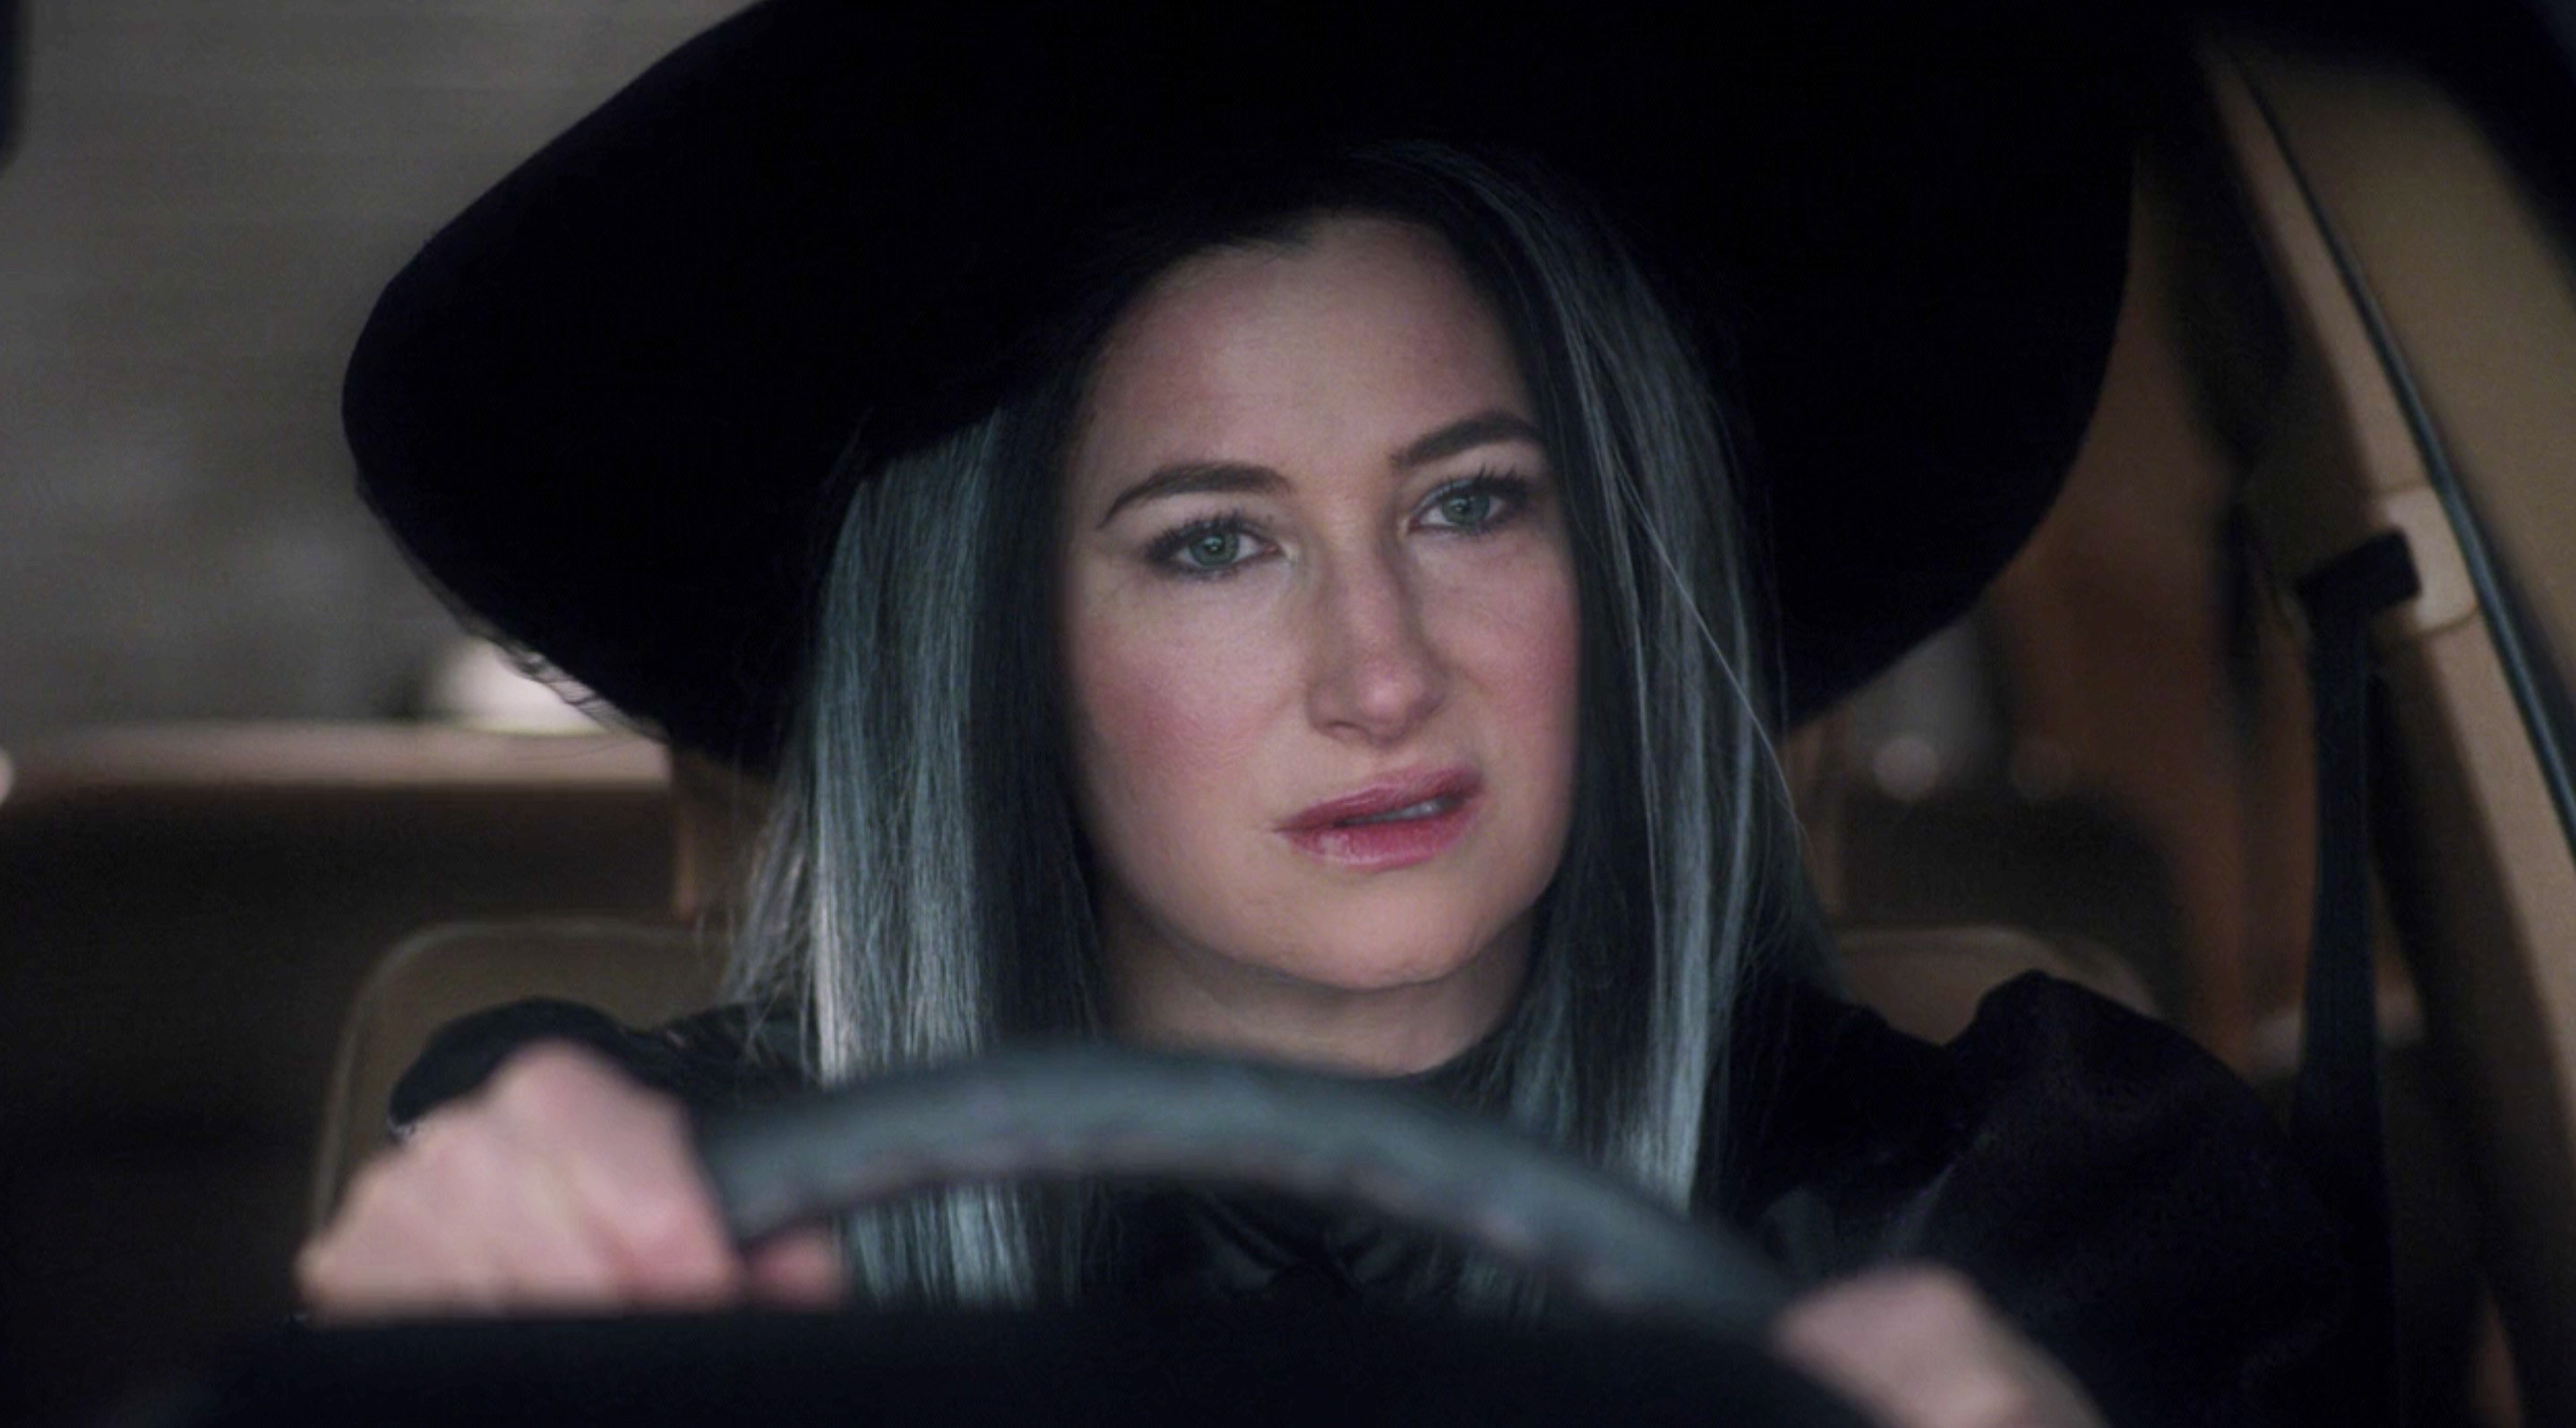 艾格尼丝打扮成女巫,她坐在一辆车的车轮